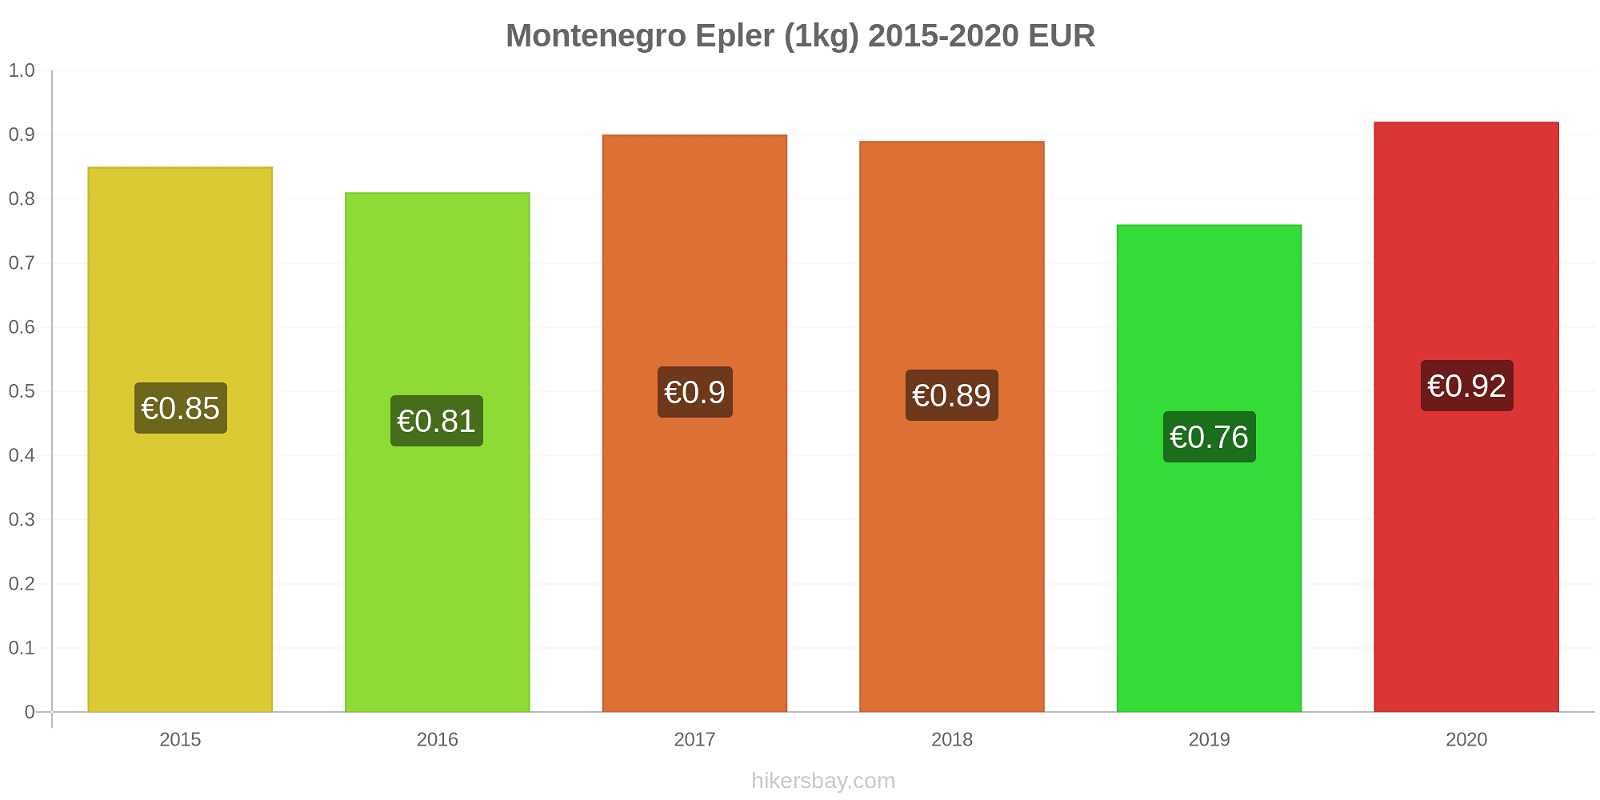 Montenegro prisendringer Epler (1kg) hikersbay.com